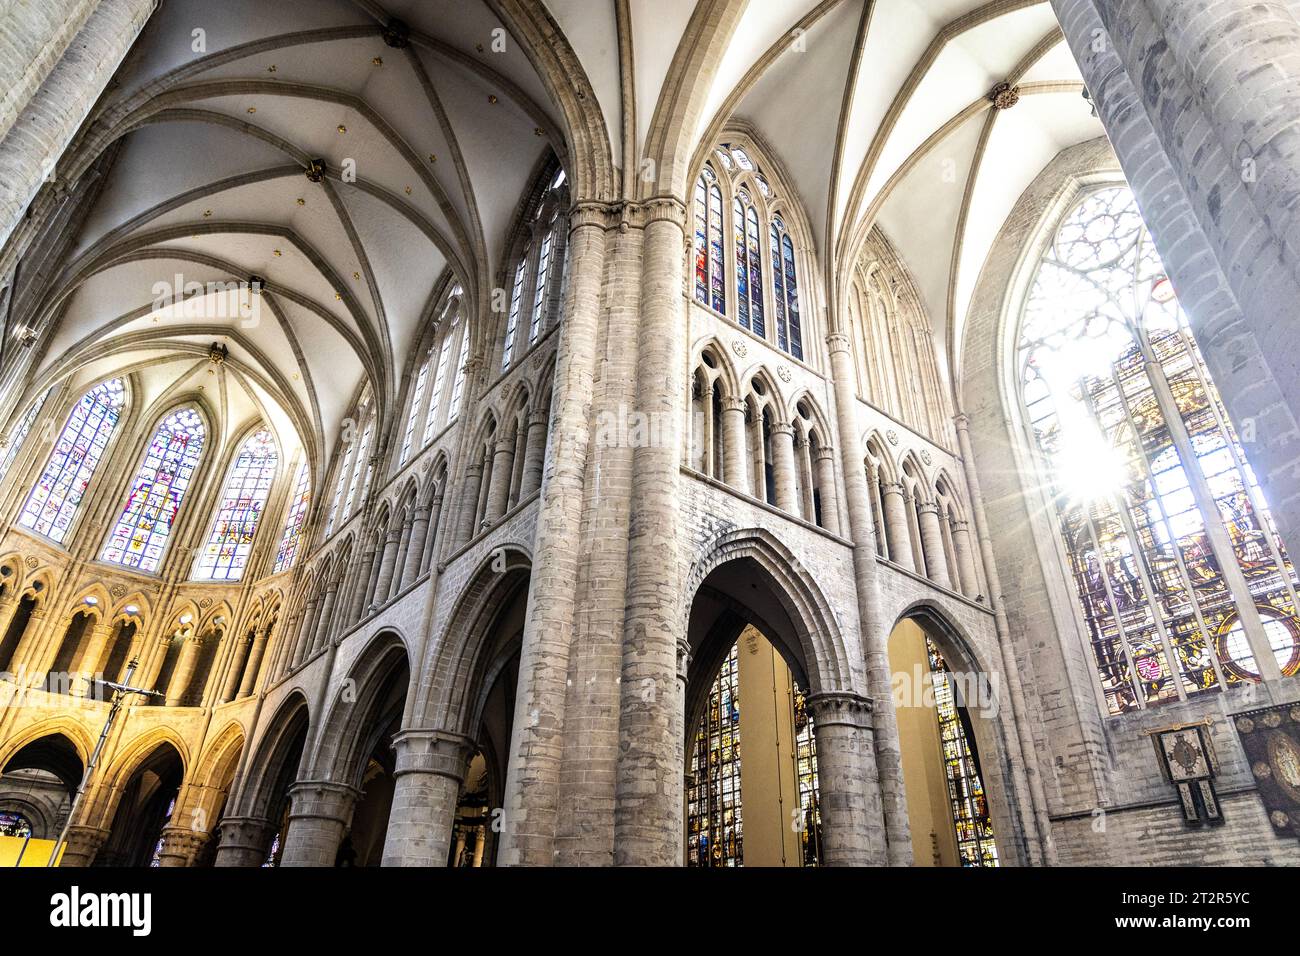 Plafond voûté intérieur, vitraux et déambulatoire, cathédrale de St. Gudula, Bruxelles, Belgique Banque D'Images